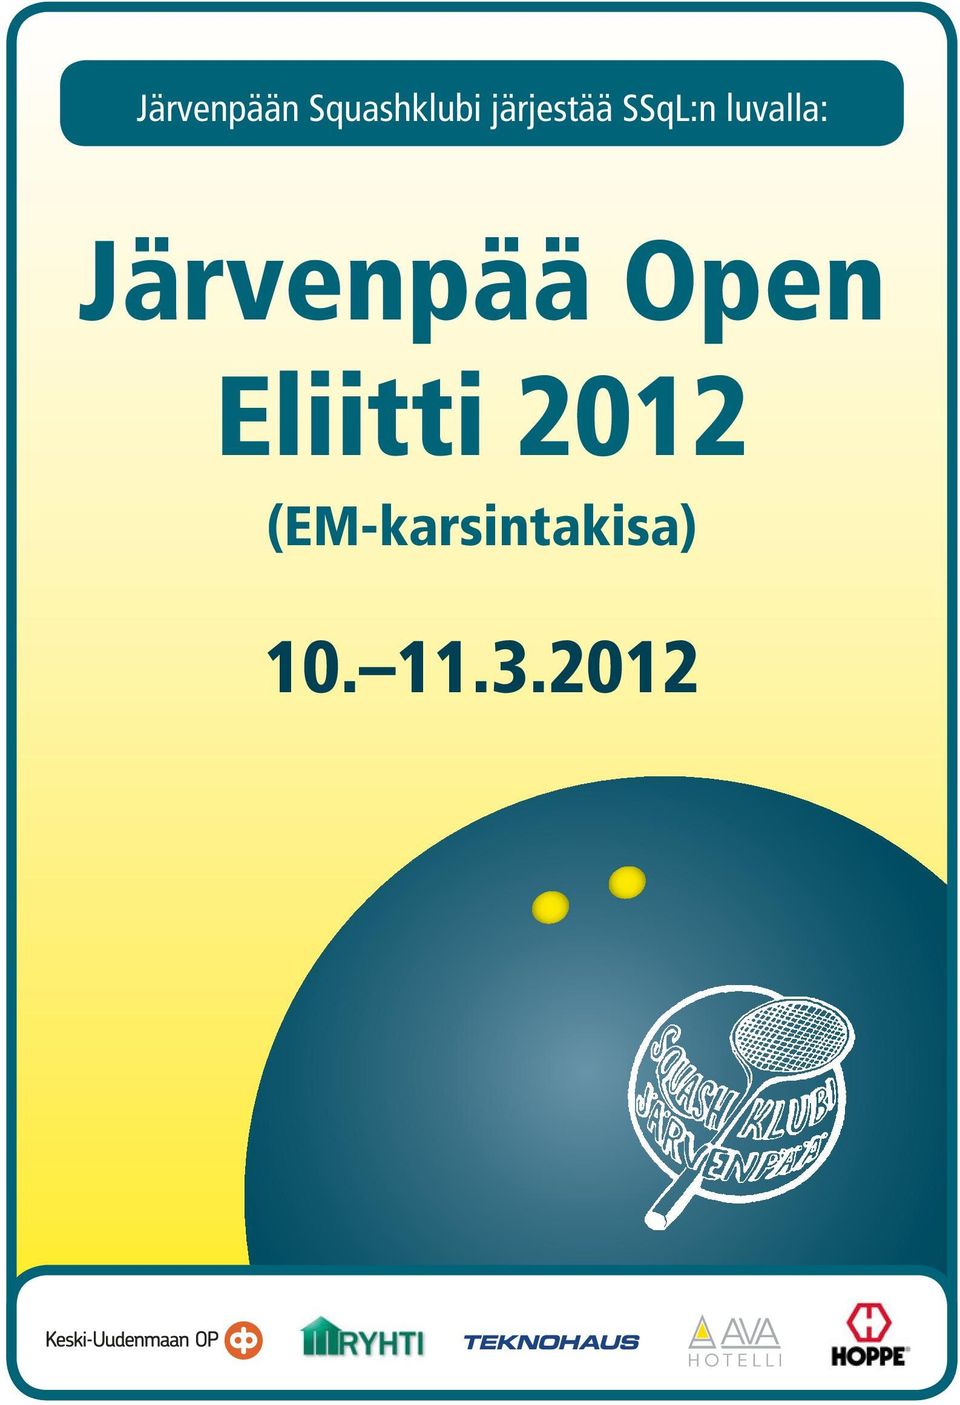 Järvenpää Open Eliitti